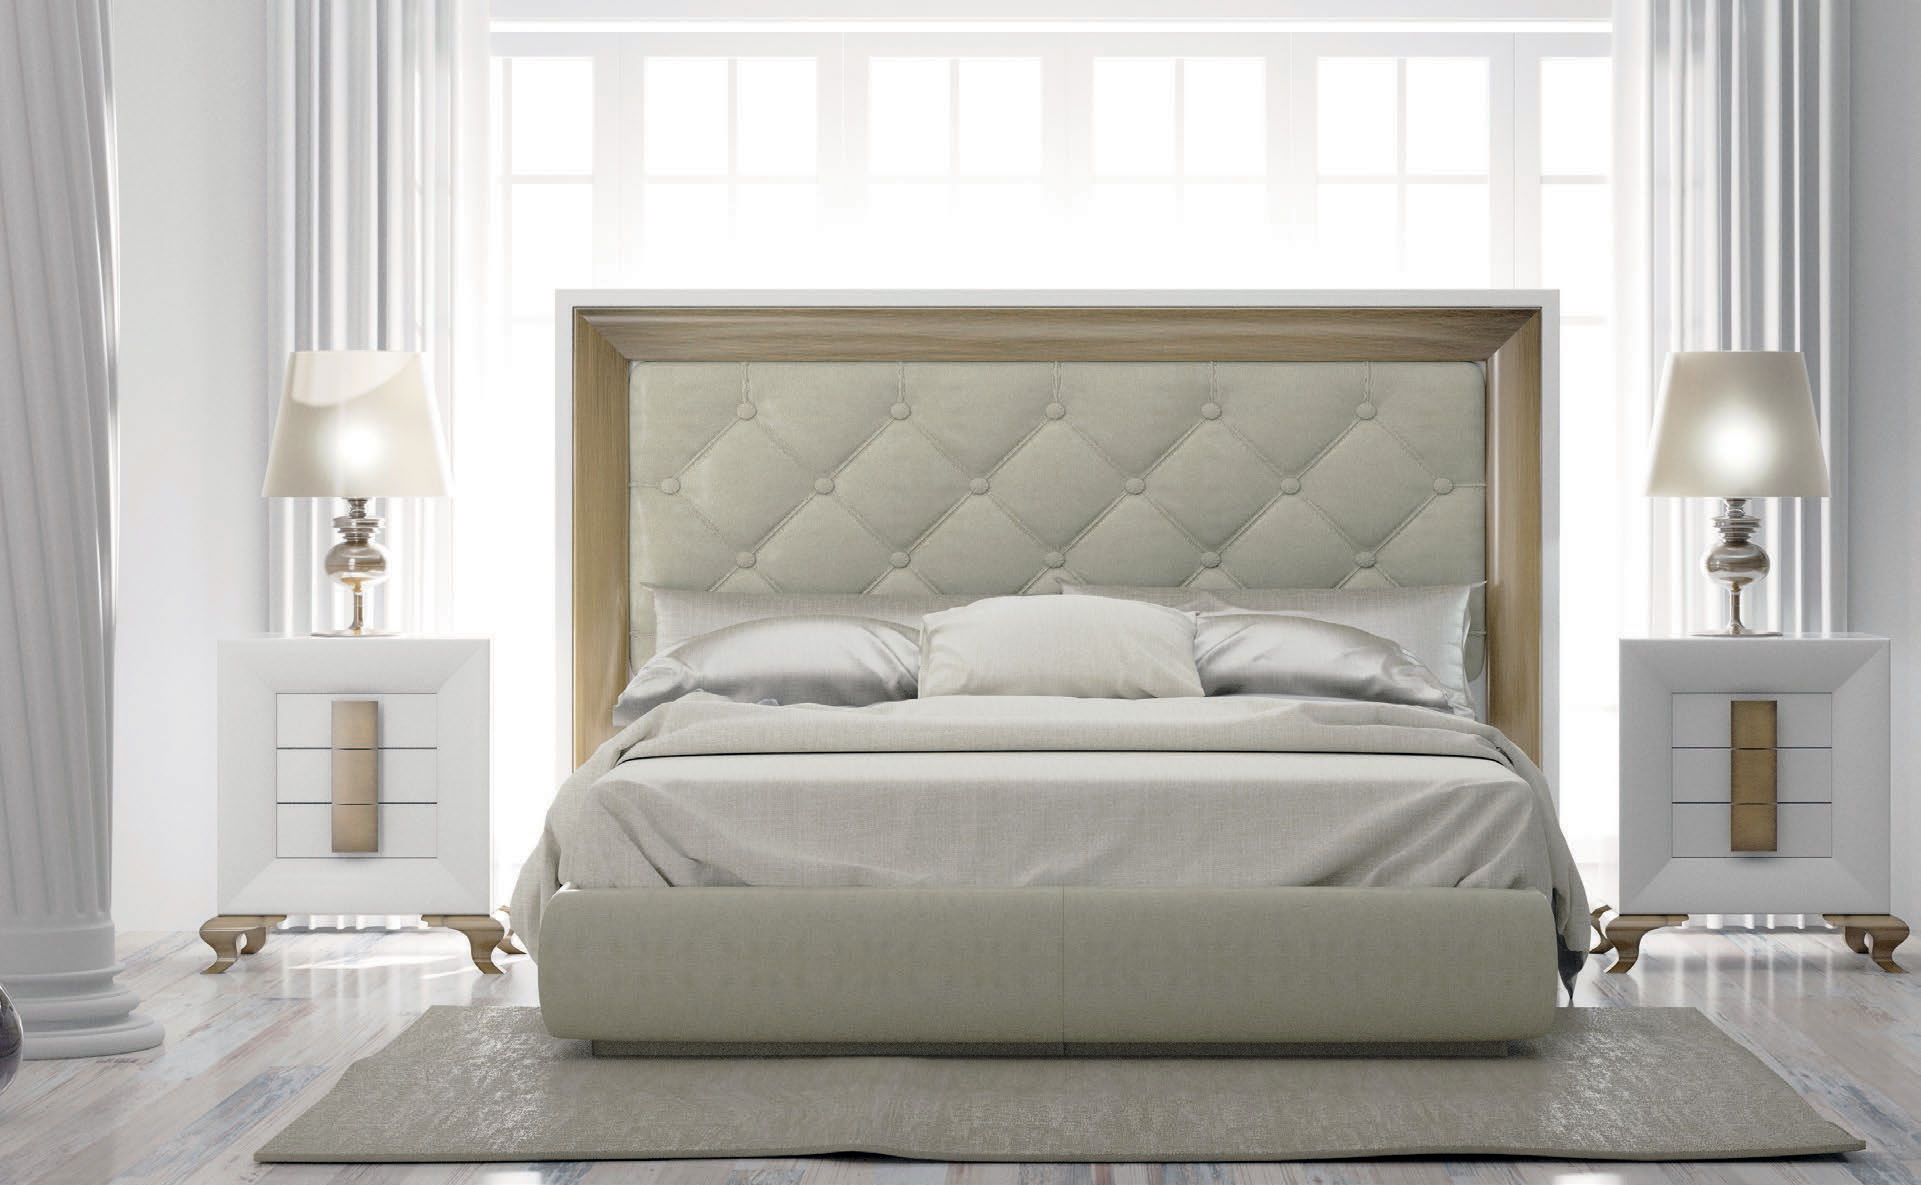 Brands Franco Furniture Avanty Bedrooms, Spain DOR 139